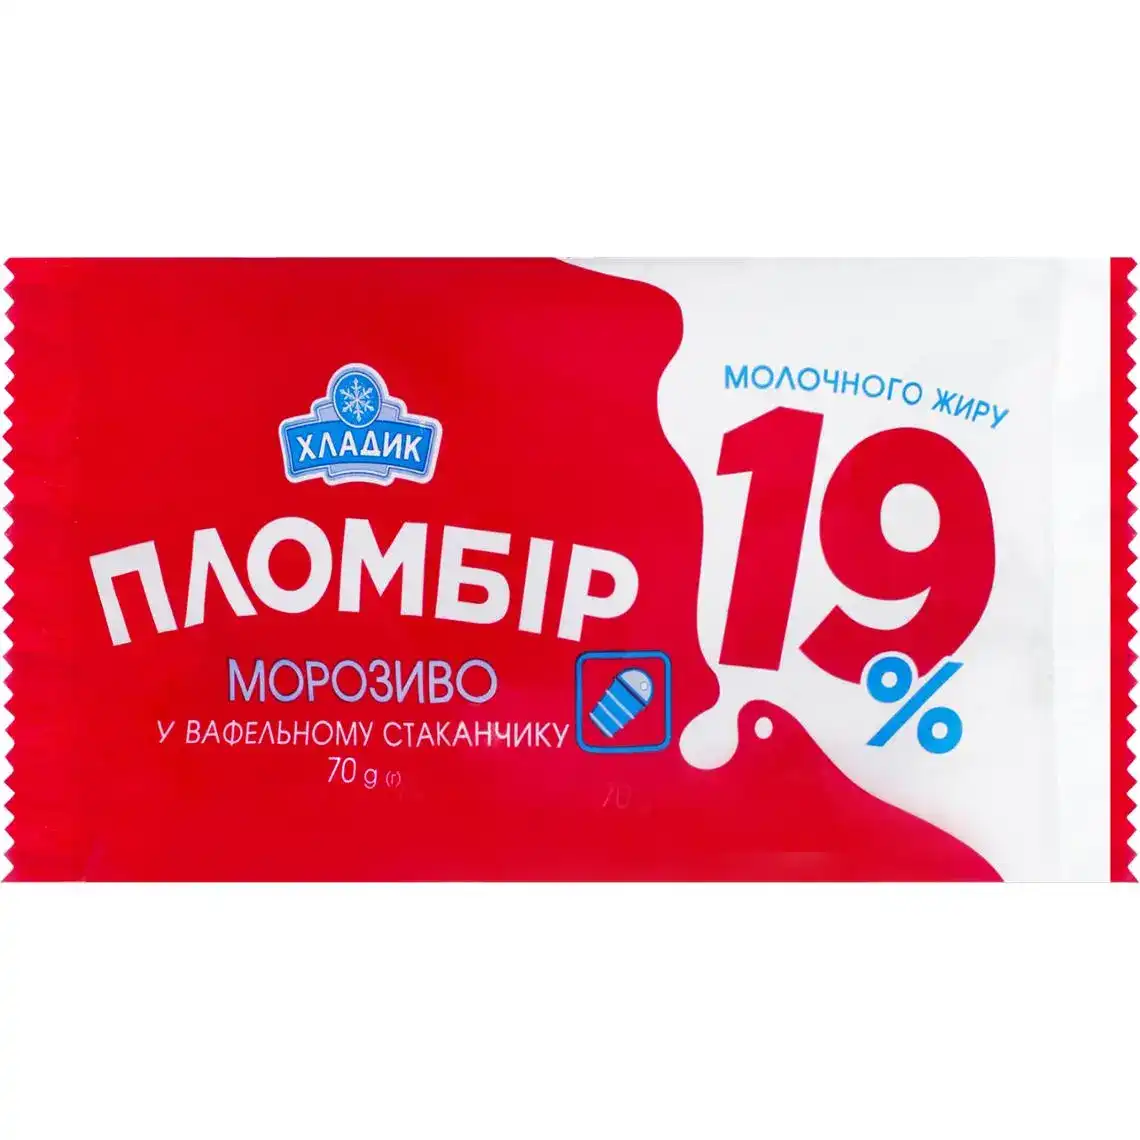 Морозиво Хладик Пломбір 19% 70 г